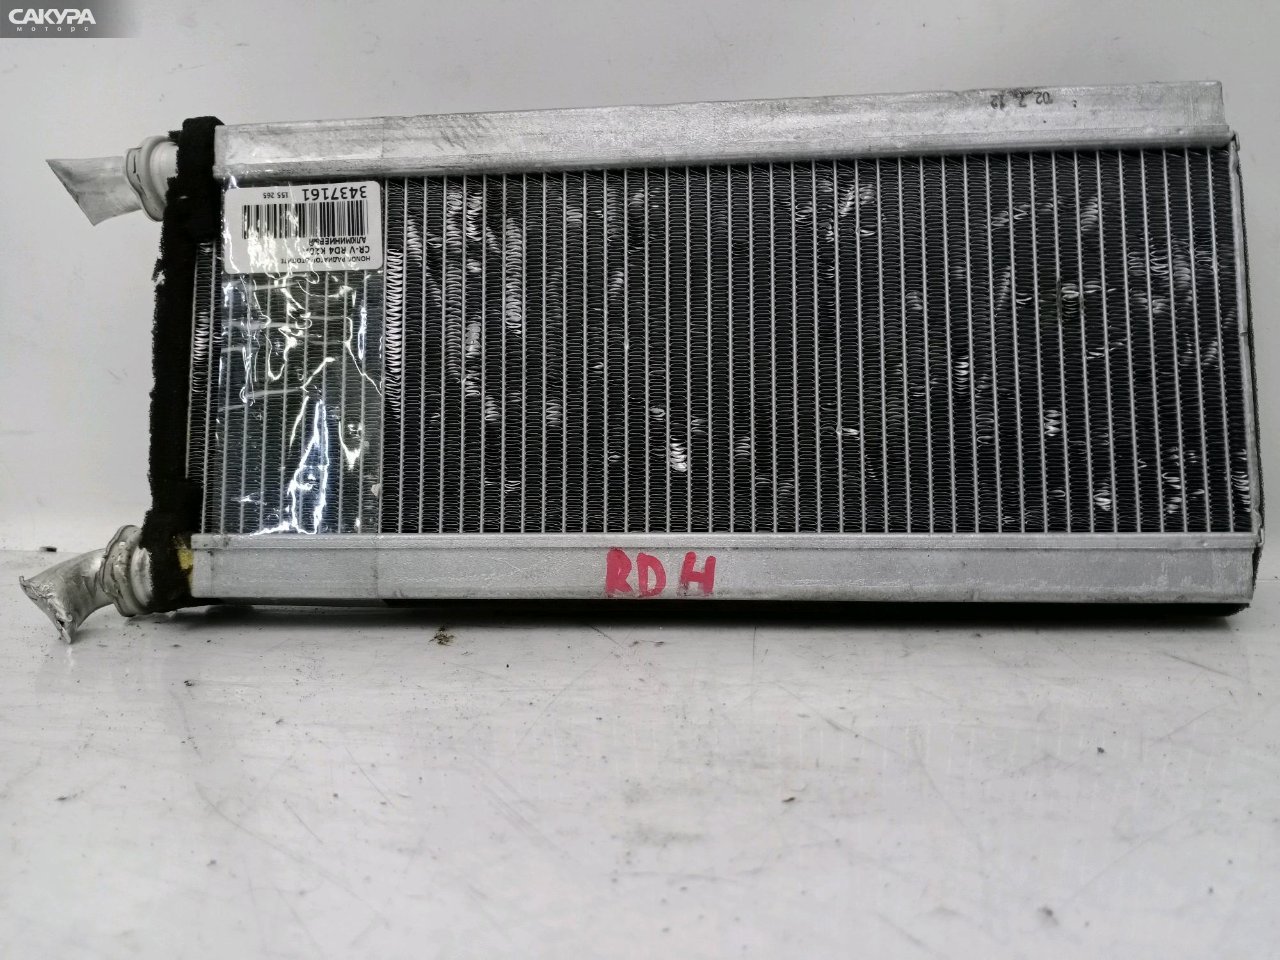 Радиатор отопителя Honda CR-V RD4 K20A: купить в Сакура Красноярск.